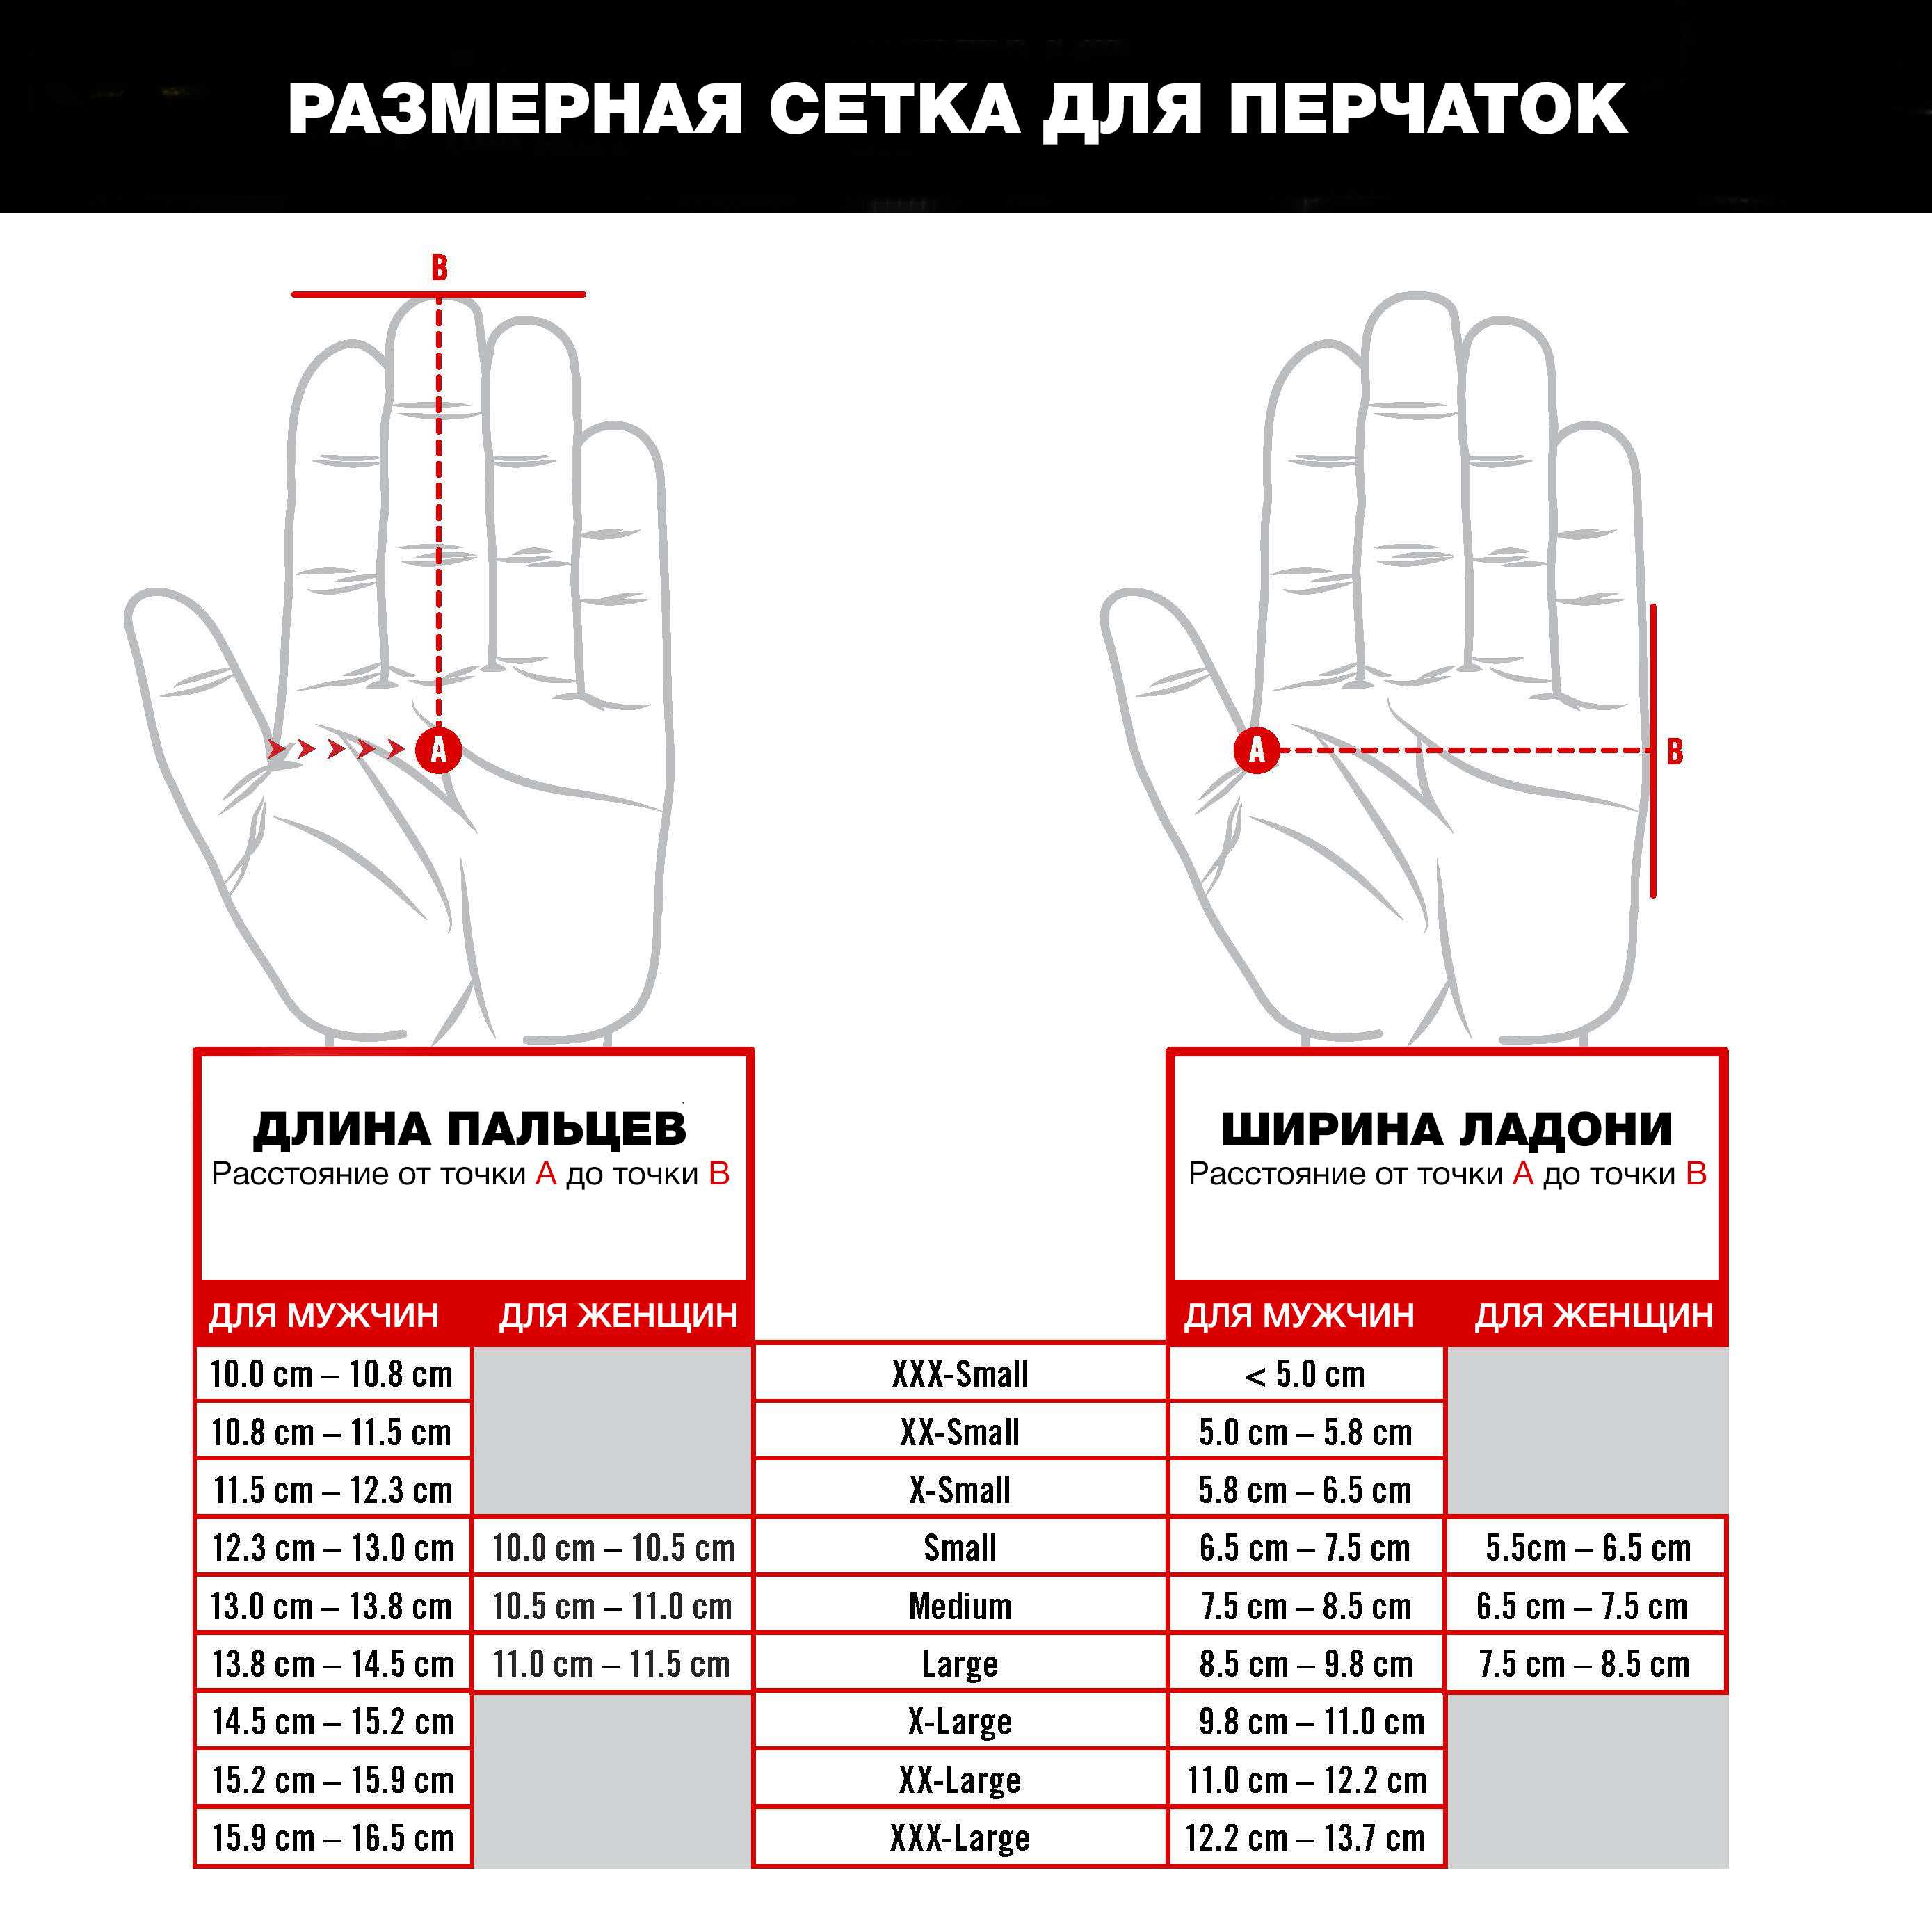 Перчаточный режим: где носить перчатки, какие нужны и помогают ли они от коронавируса